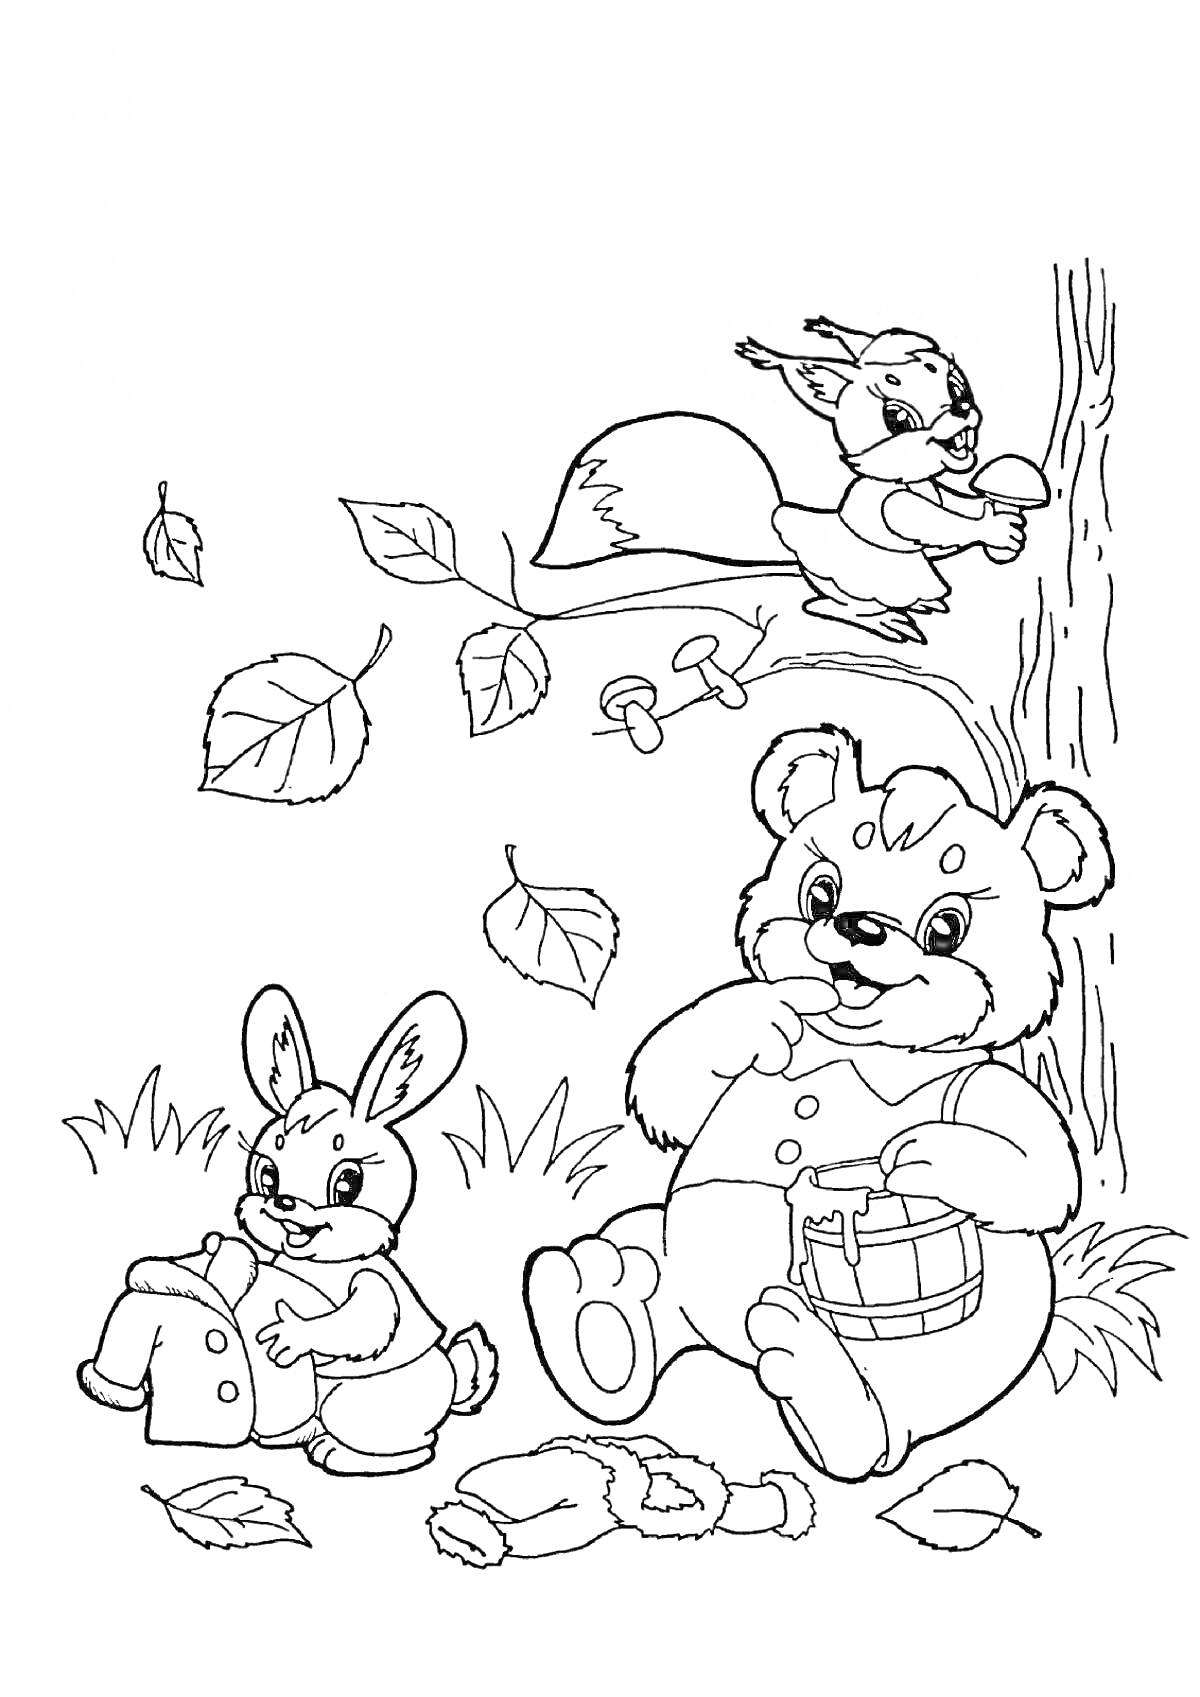 Раскраска Медведь с бочкой меда, заяц с корзиной, белка на дереве с грибом, падающие листья, грибы на земле